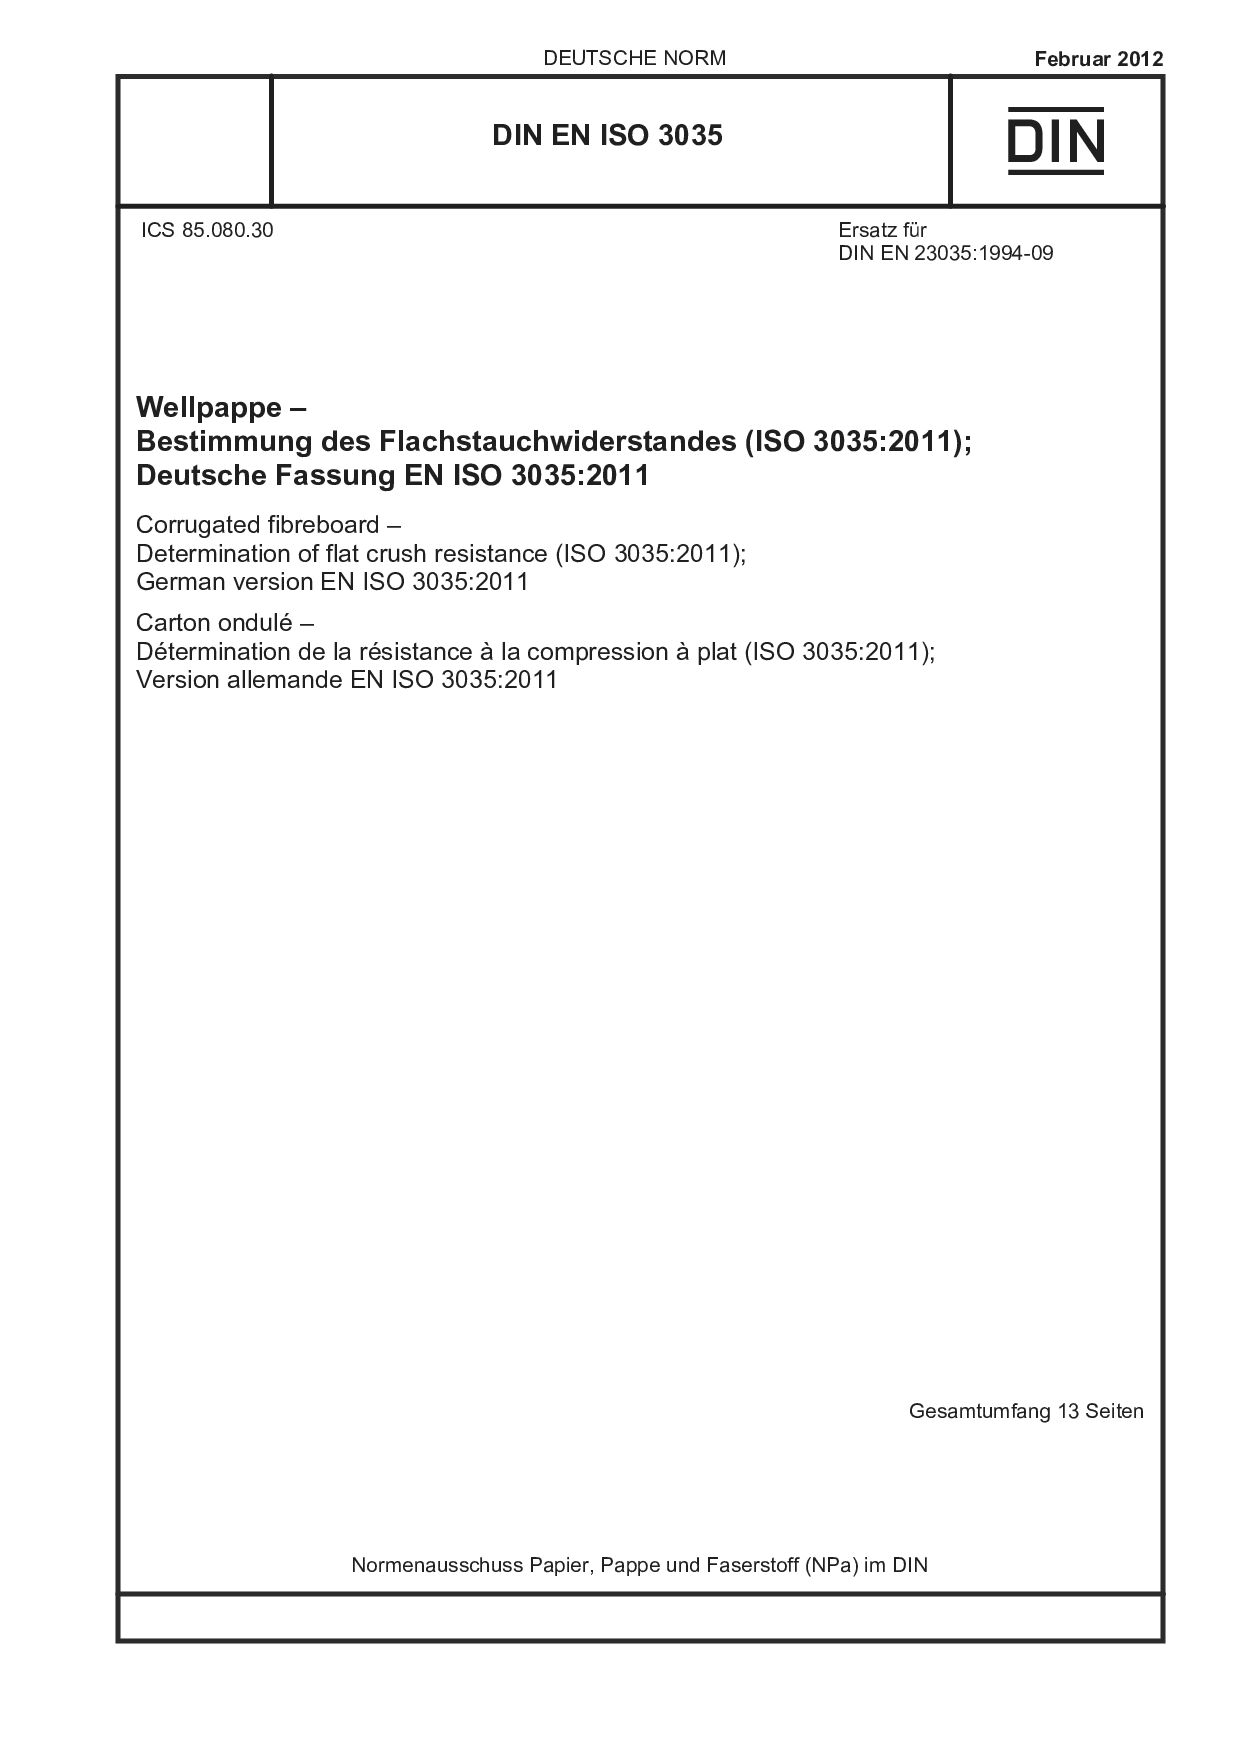 DIN EN ISO 3035:2012